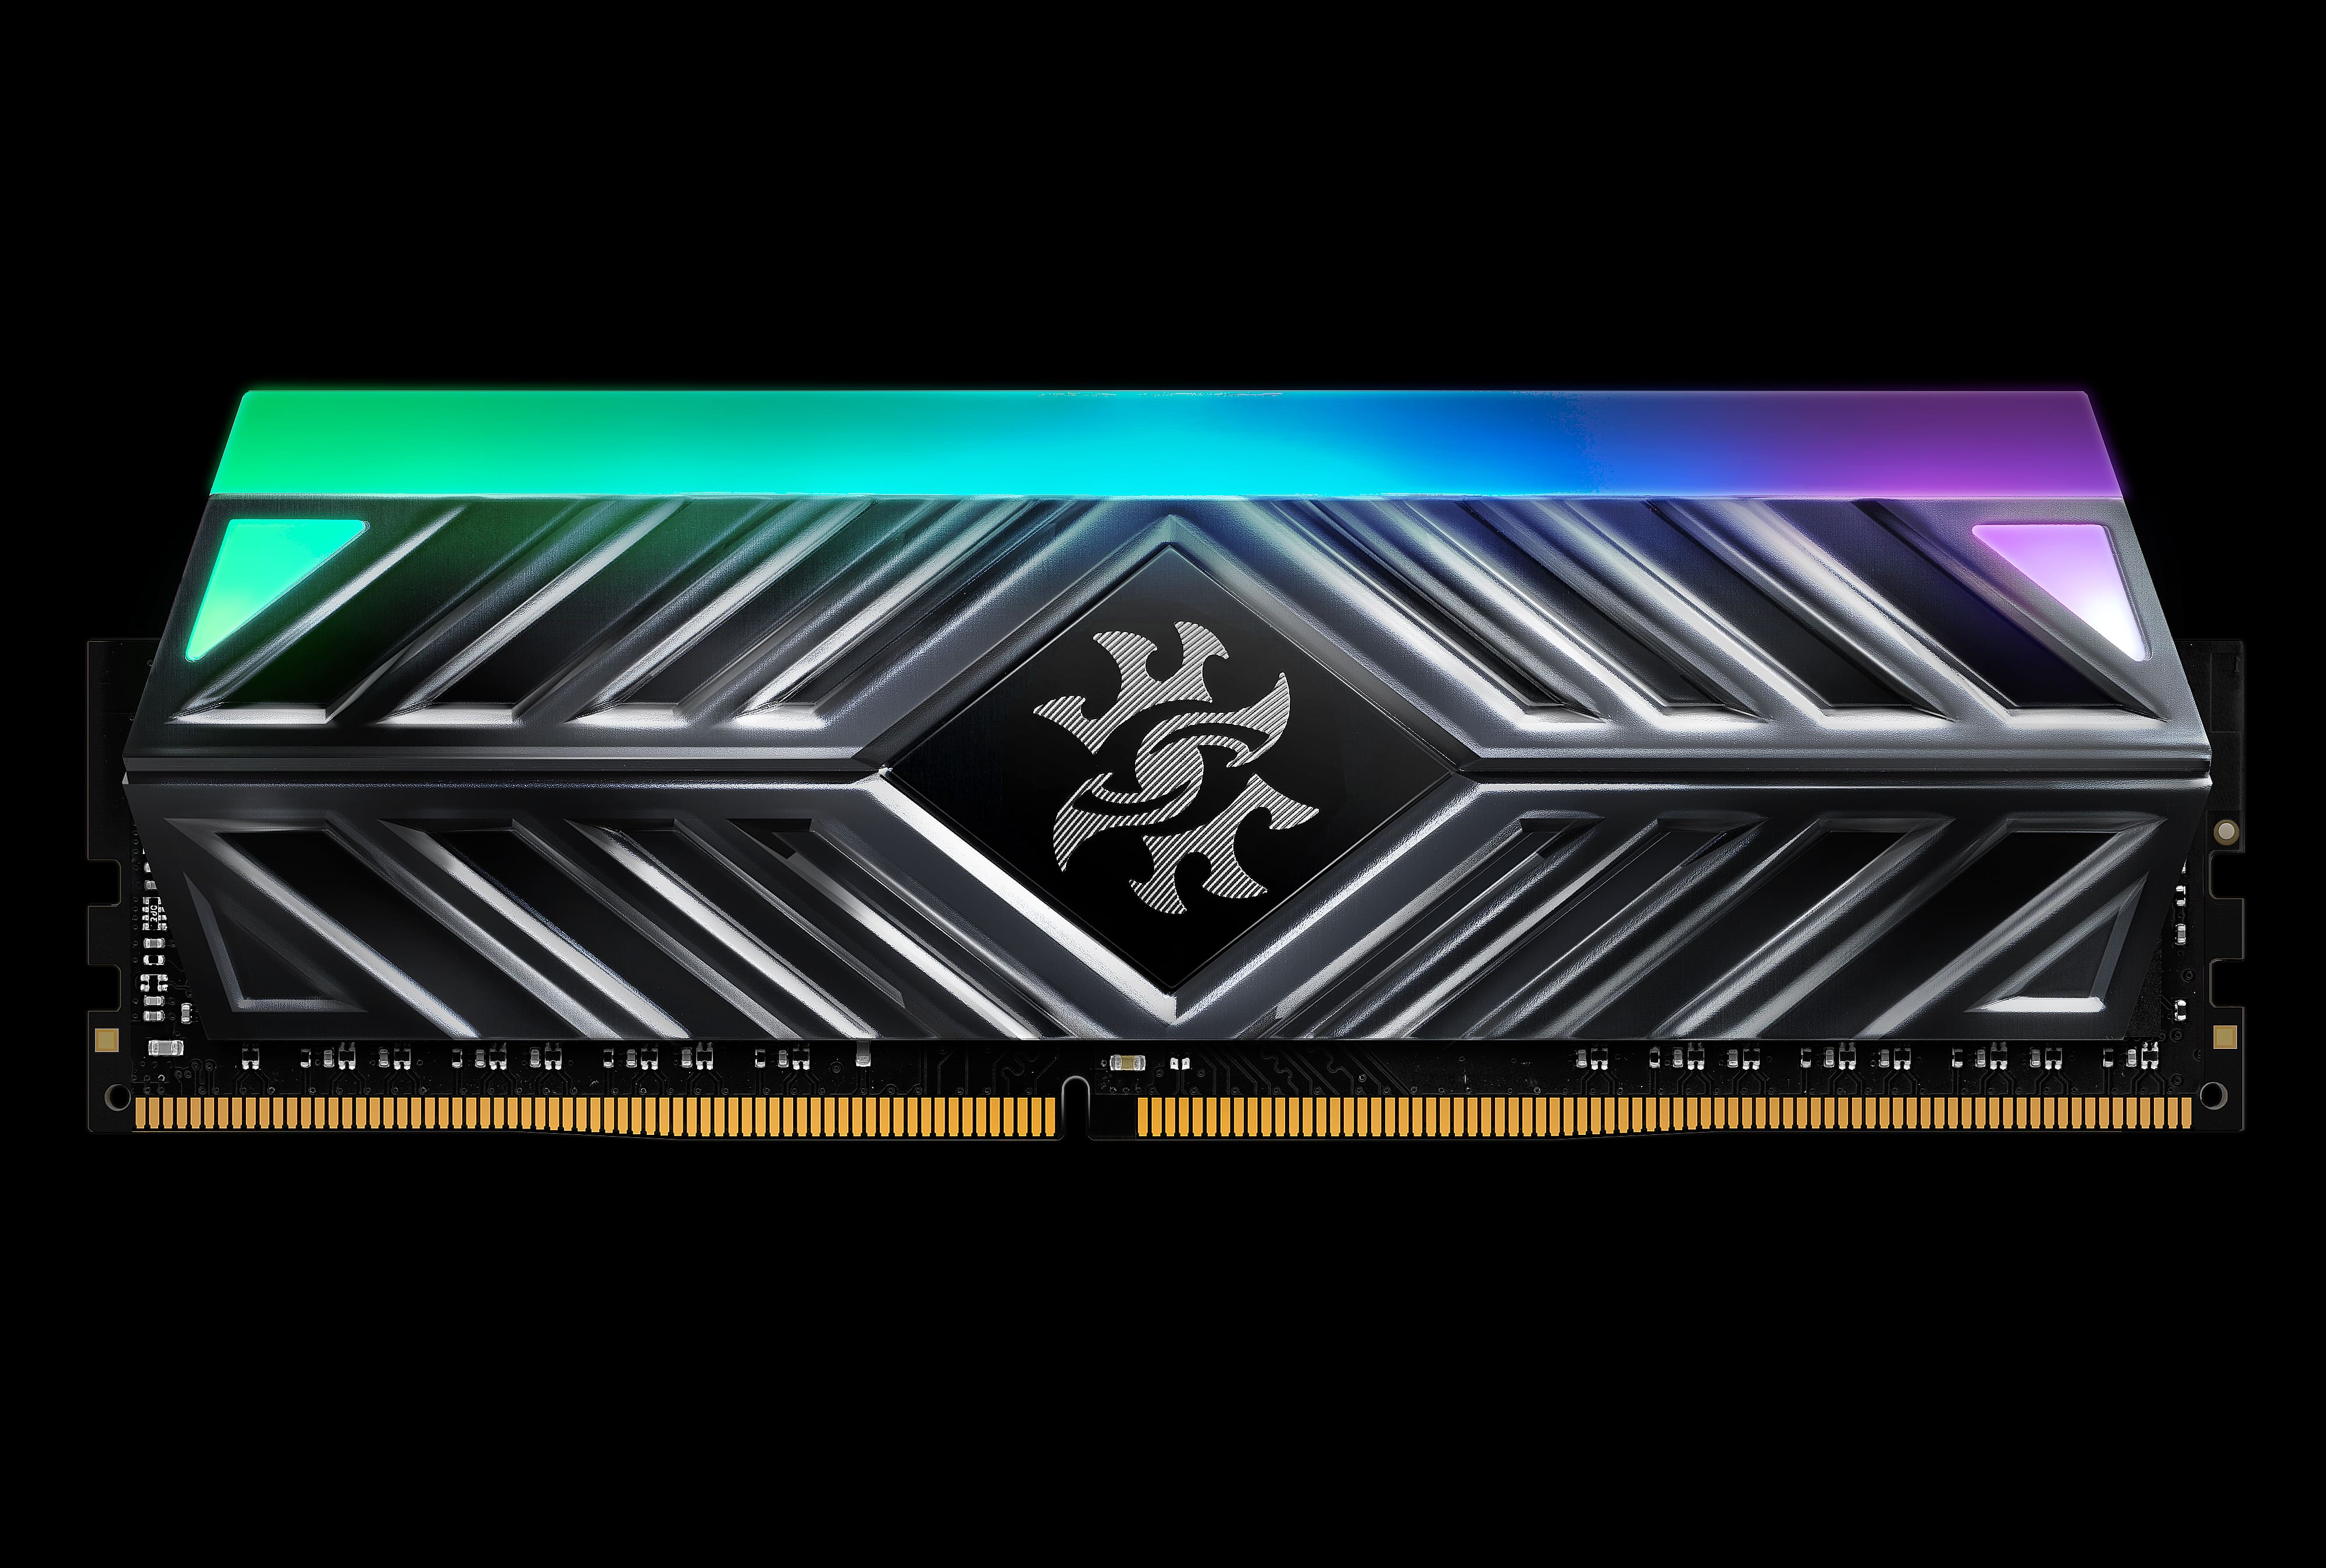 SPECTRIX D41 DDR4 RGB Memory Module